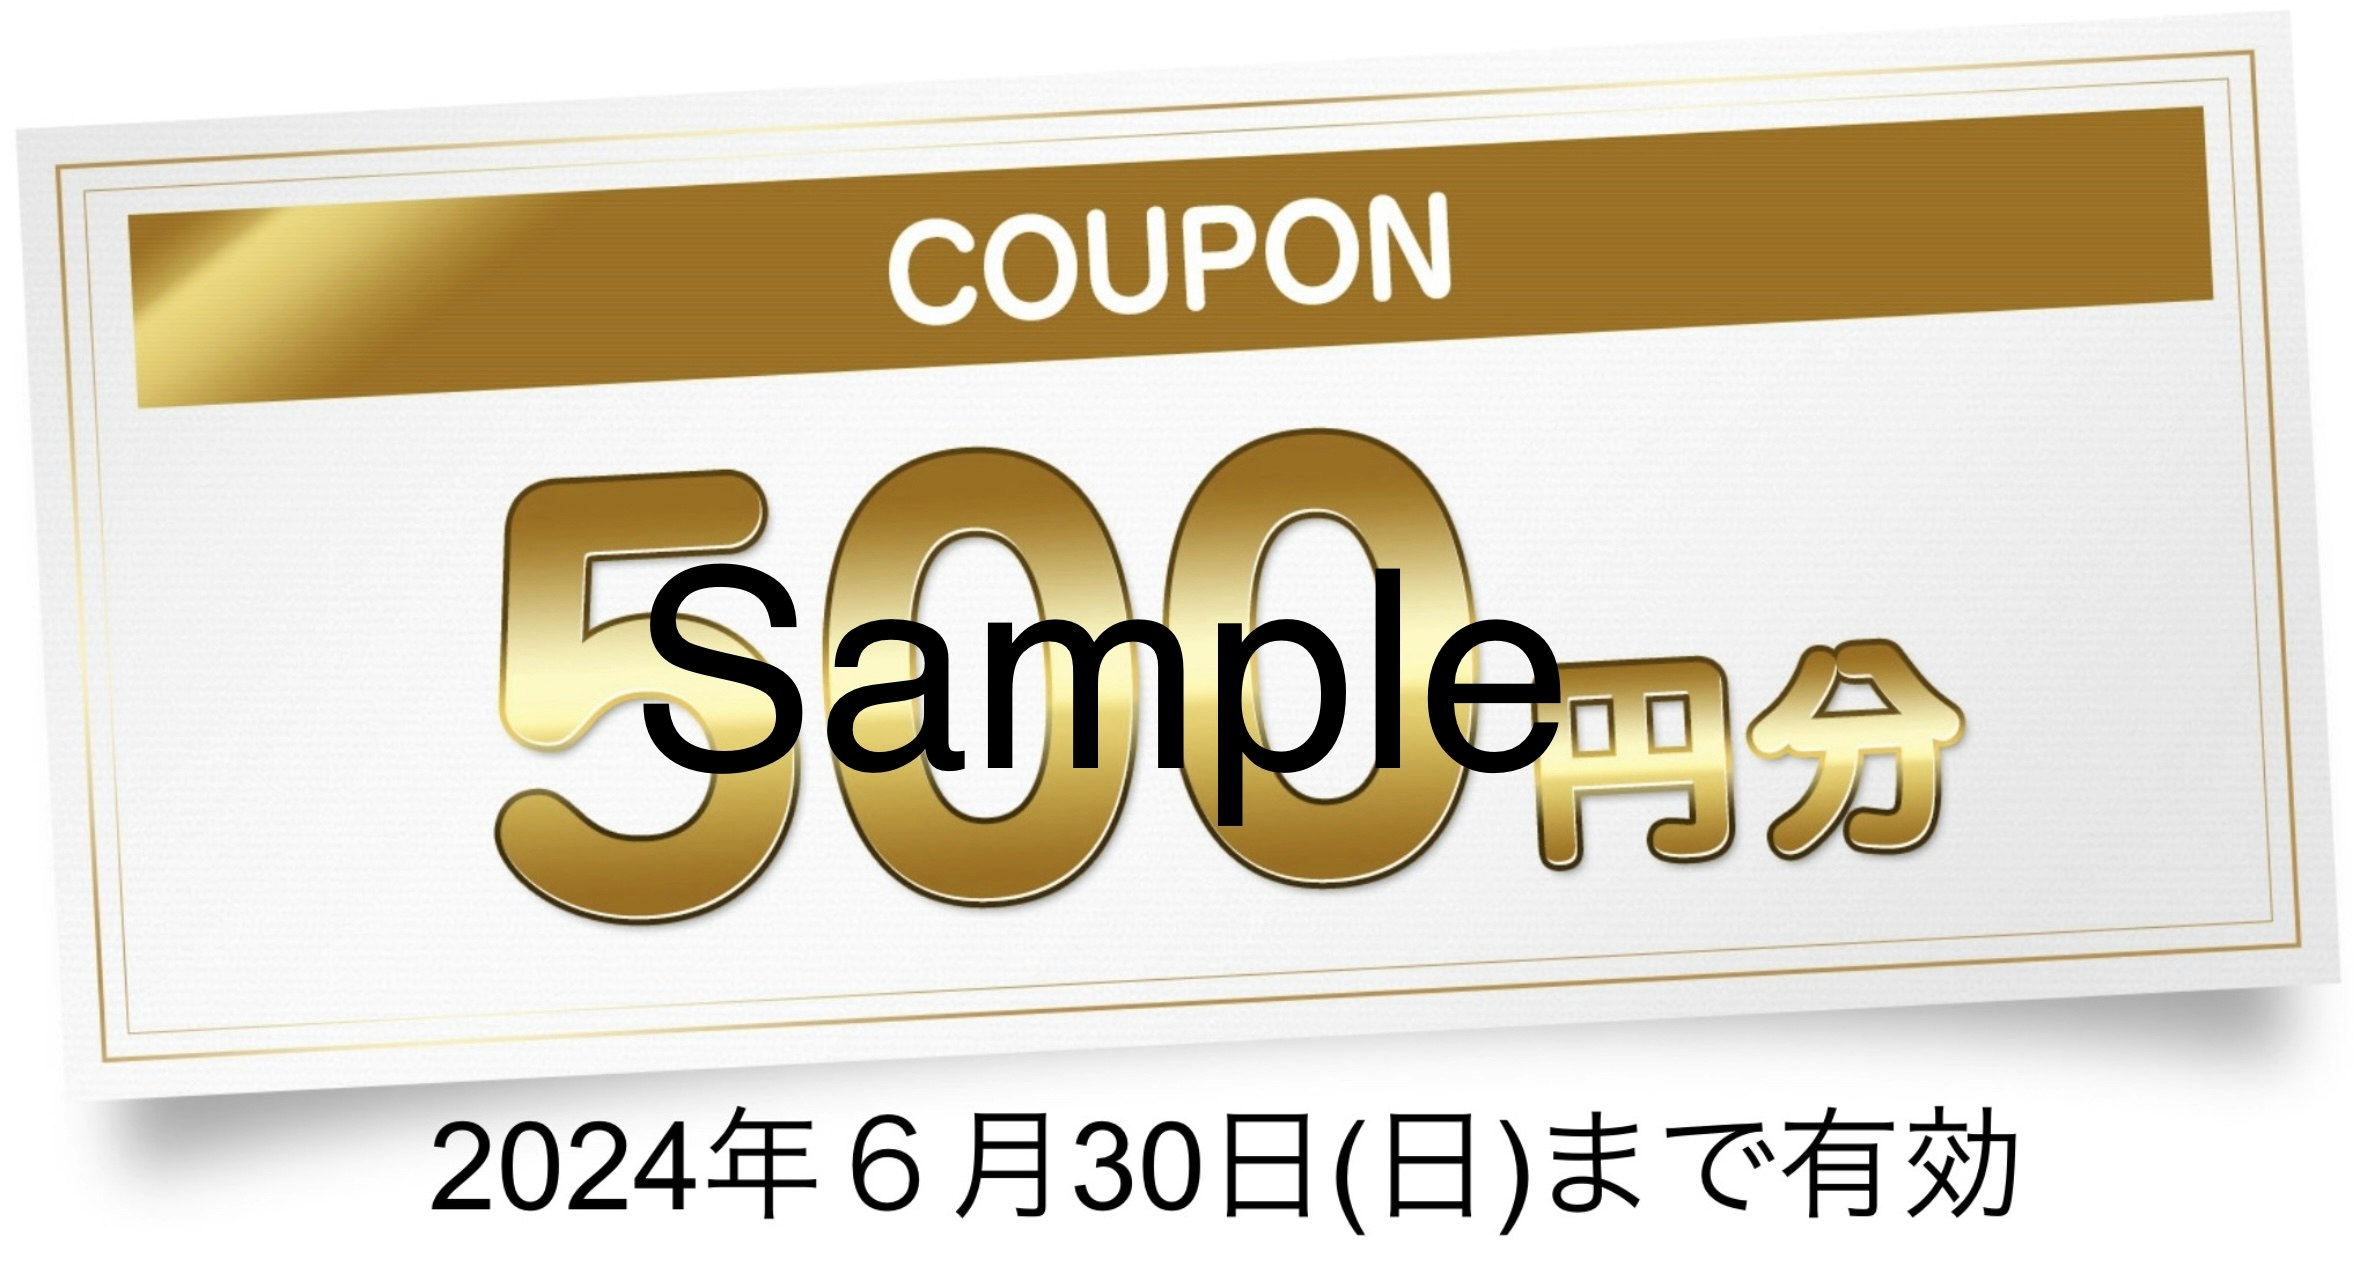 サンパーキング500円クーポンサンプル画像